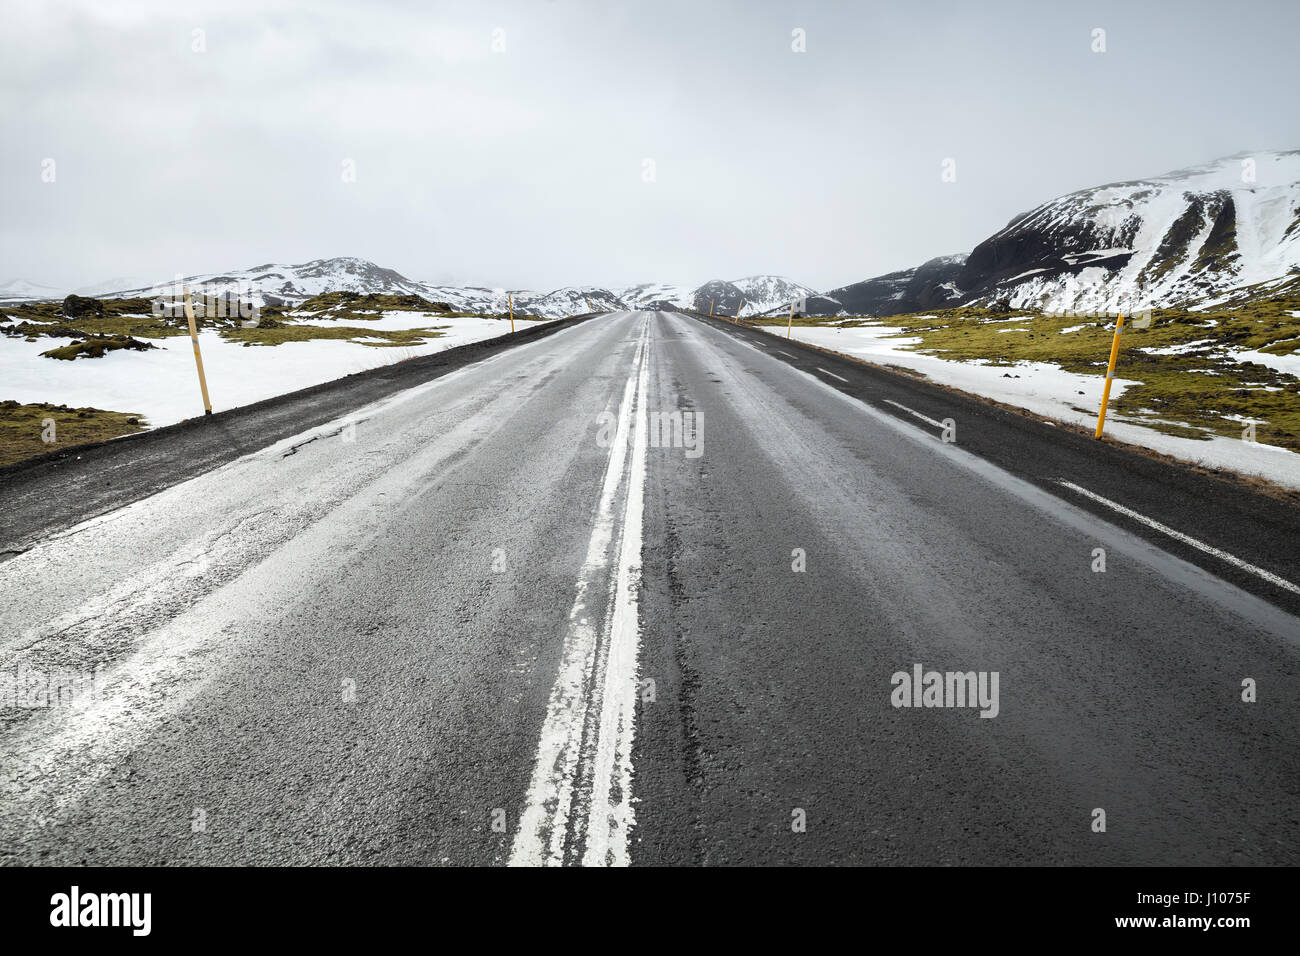 Route islandaise, perspetive paysage rural avec des montagnes enneigées à l'horizon Banque D'Images